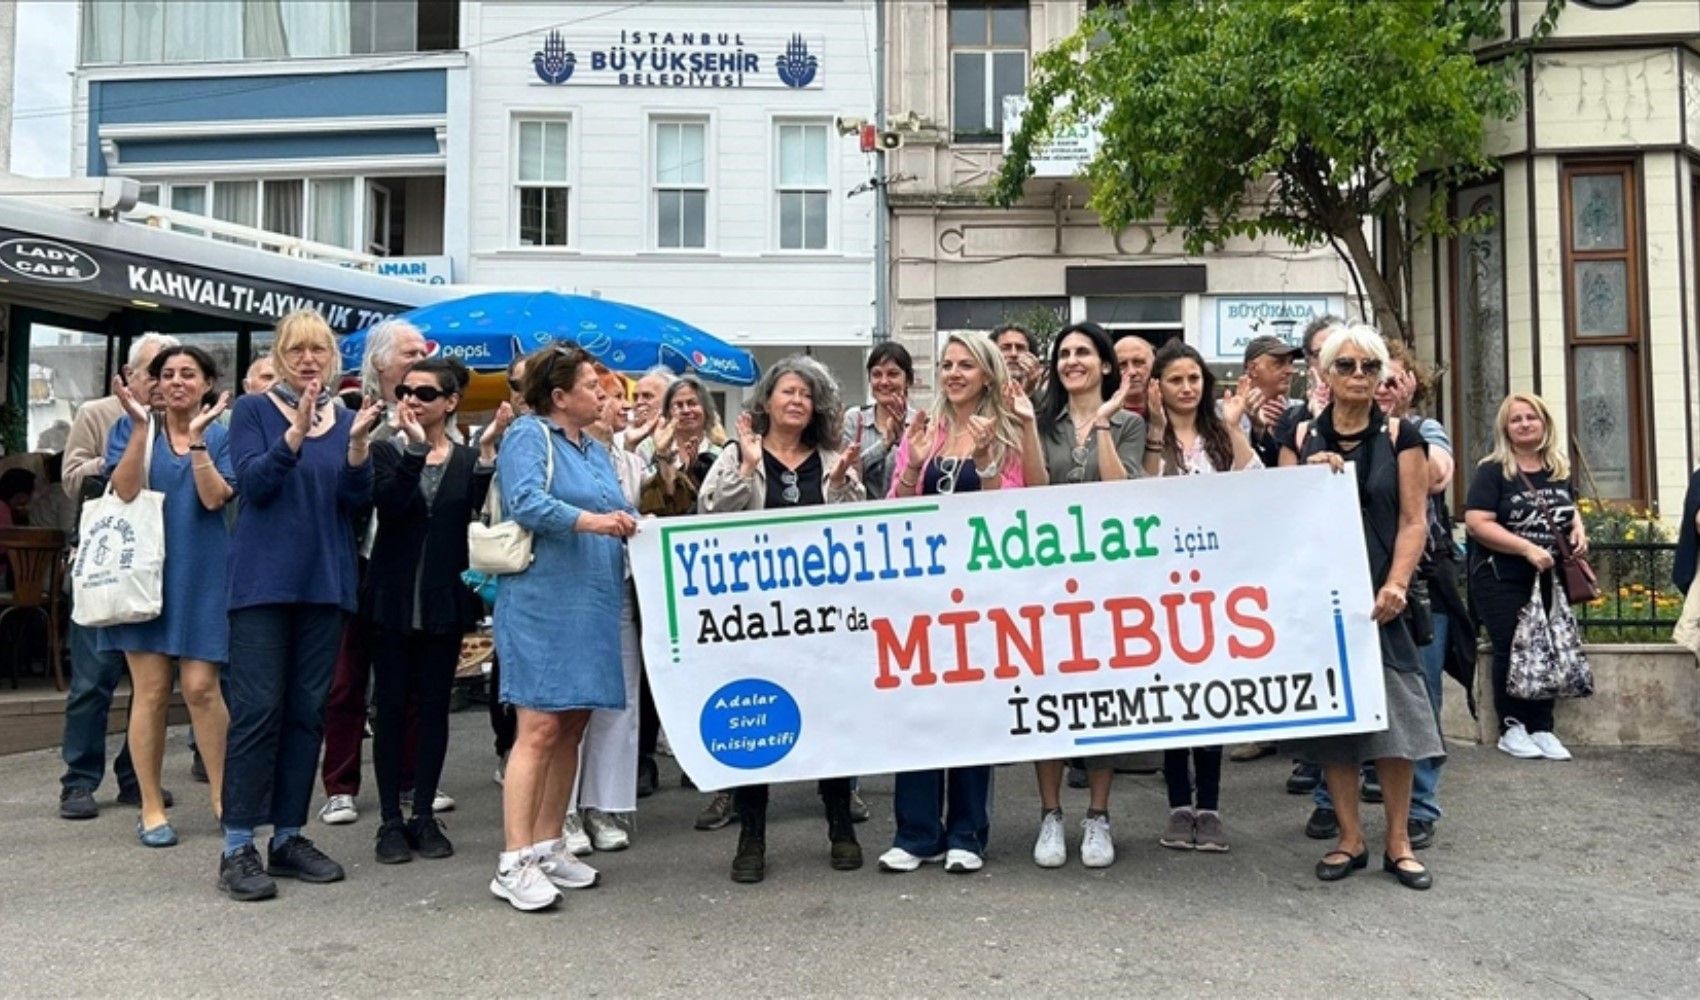 Adalar'da minibüs tepkisine İBB'den cevap: Halkın büyük kısmı memnun